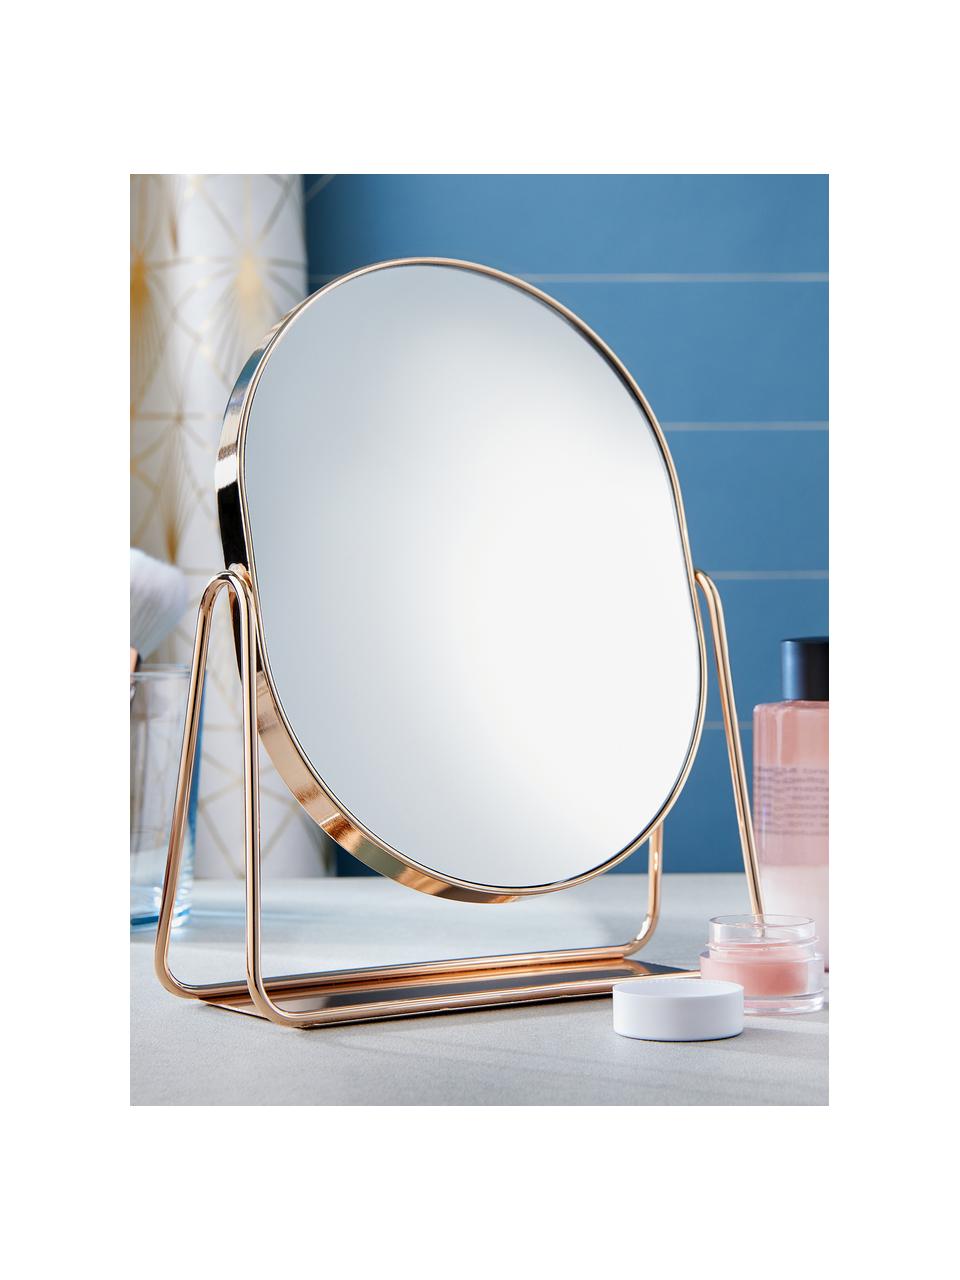 Ovaler Kosmetikspiegel Gloria mit roségoldenem Metallgestell, Gestell: Metall, beschichtet, Spiegelfläche: Glas, Rosegoldfarben, B 16 x H 22 cm